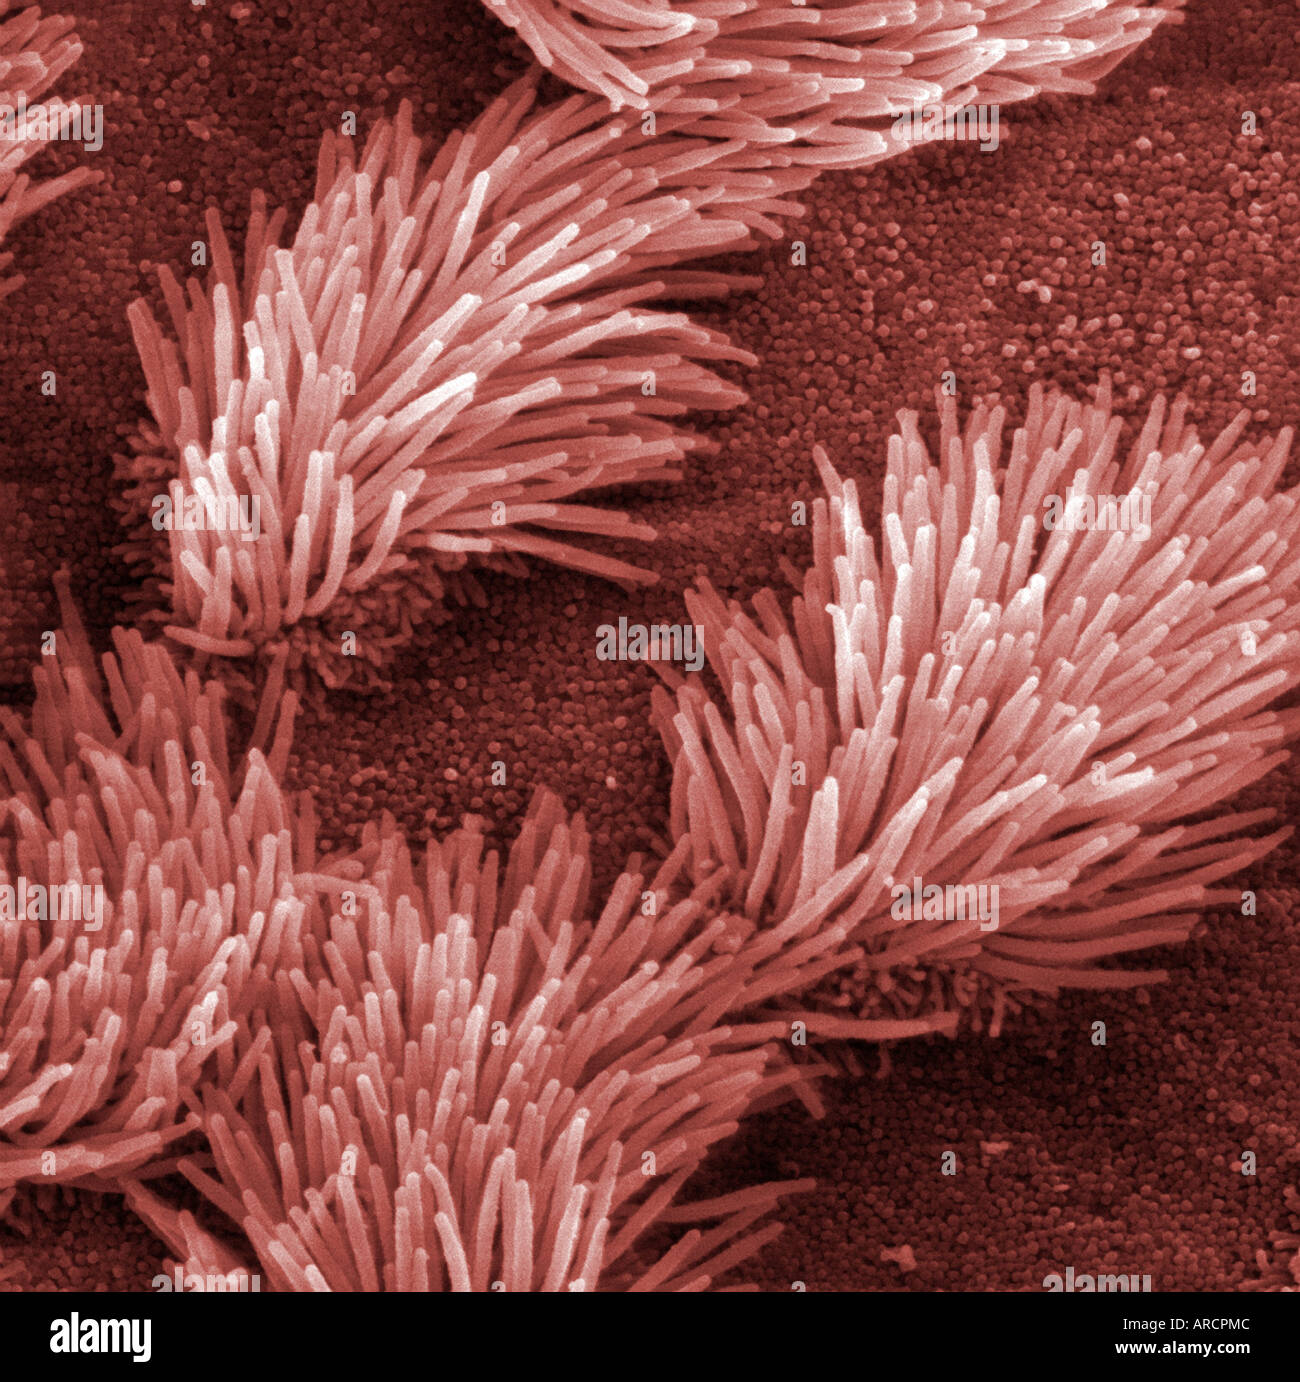 Micrografia al microscopio elettronico a scansione (SEM) di ciliate epitelio nel sistema respiratorio. Foto Stock